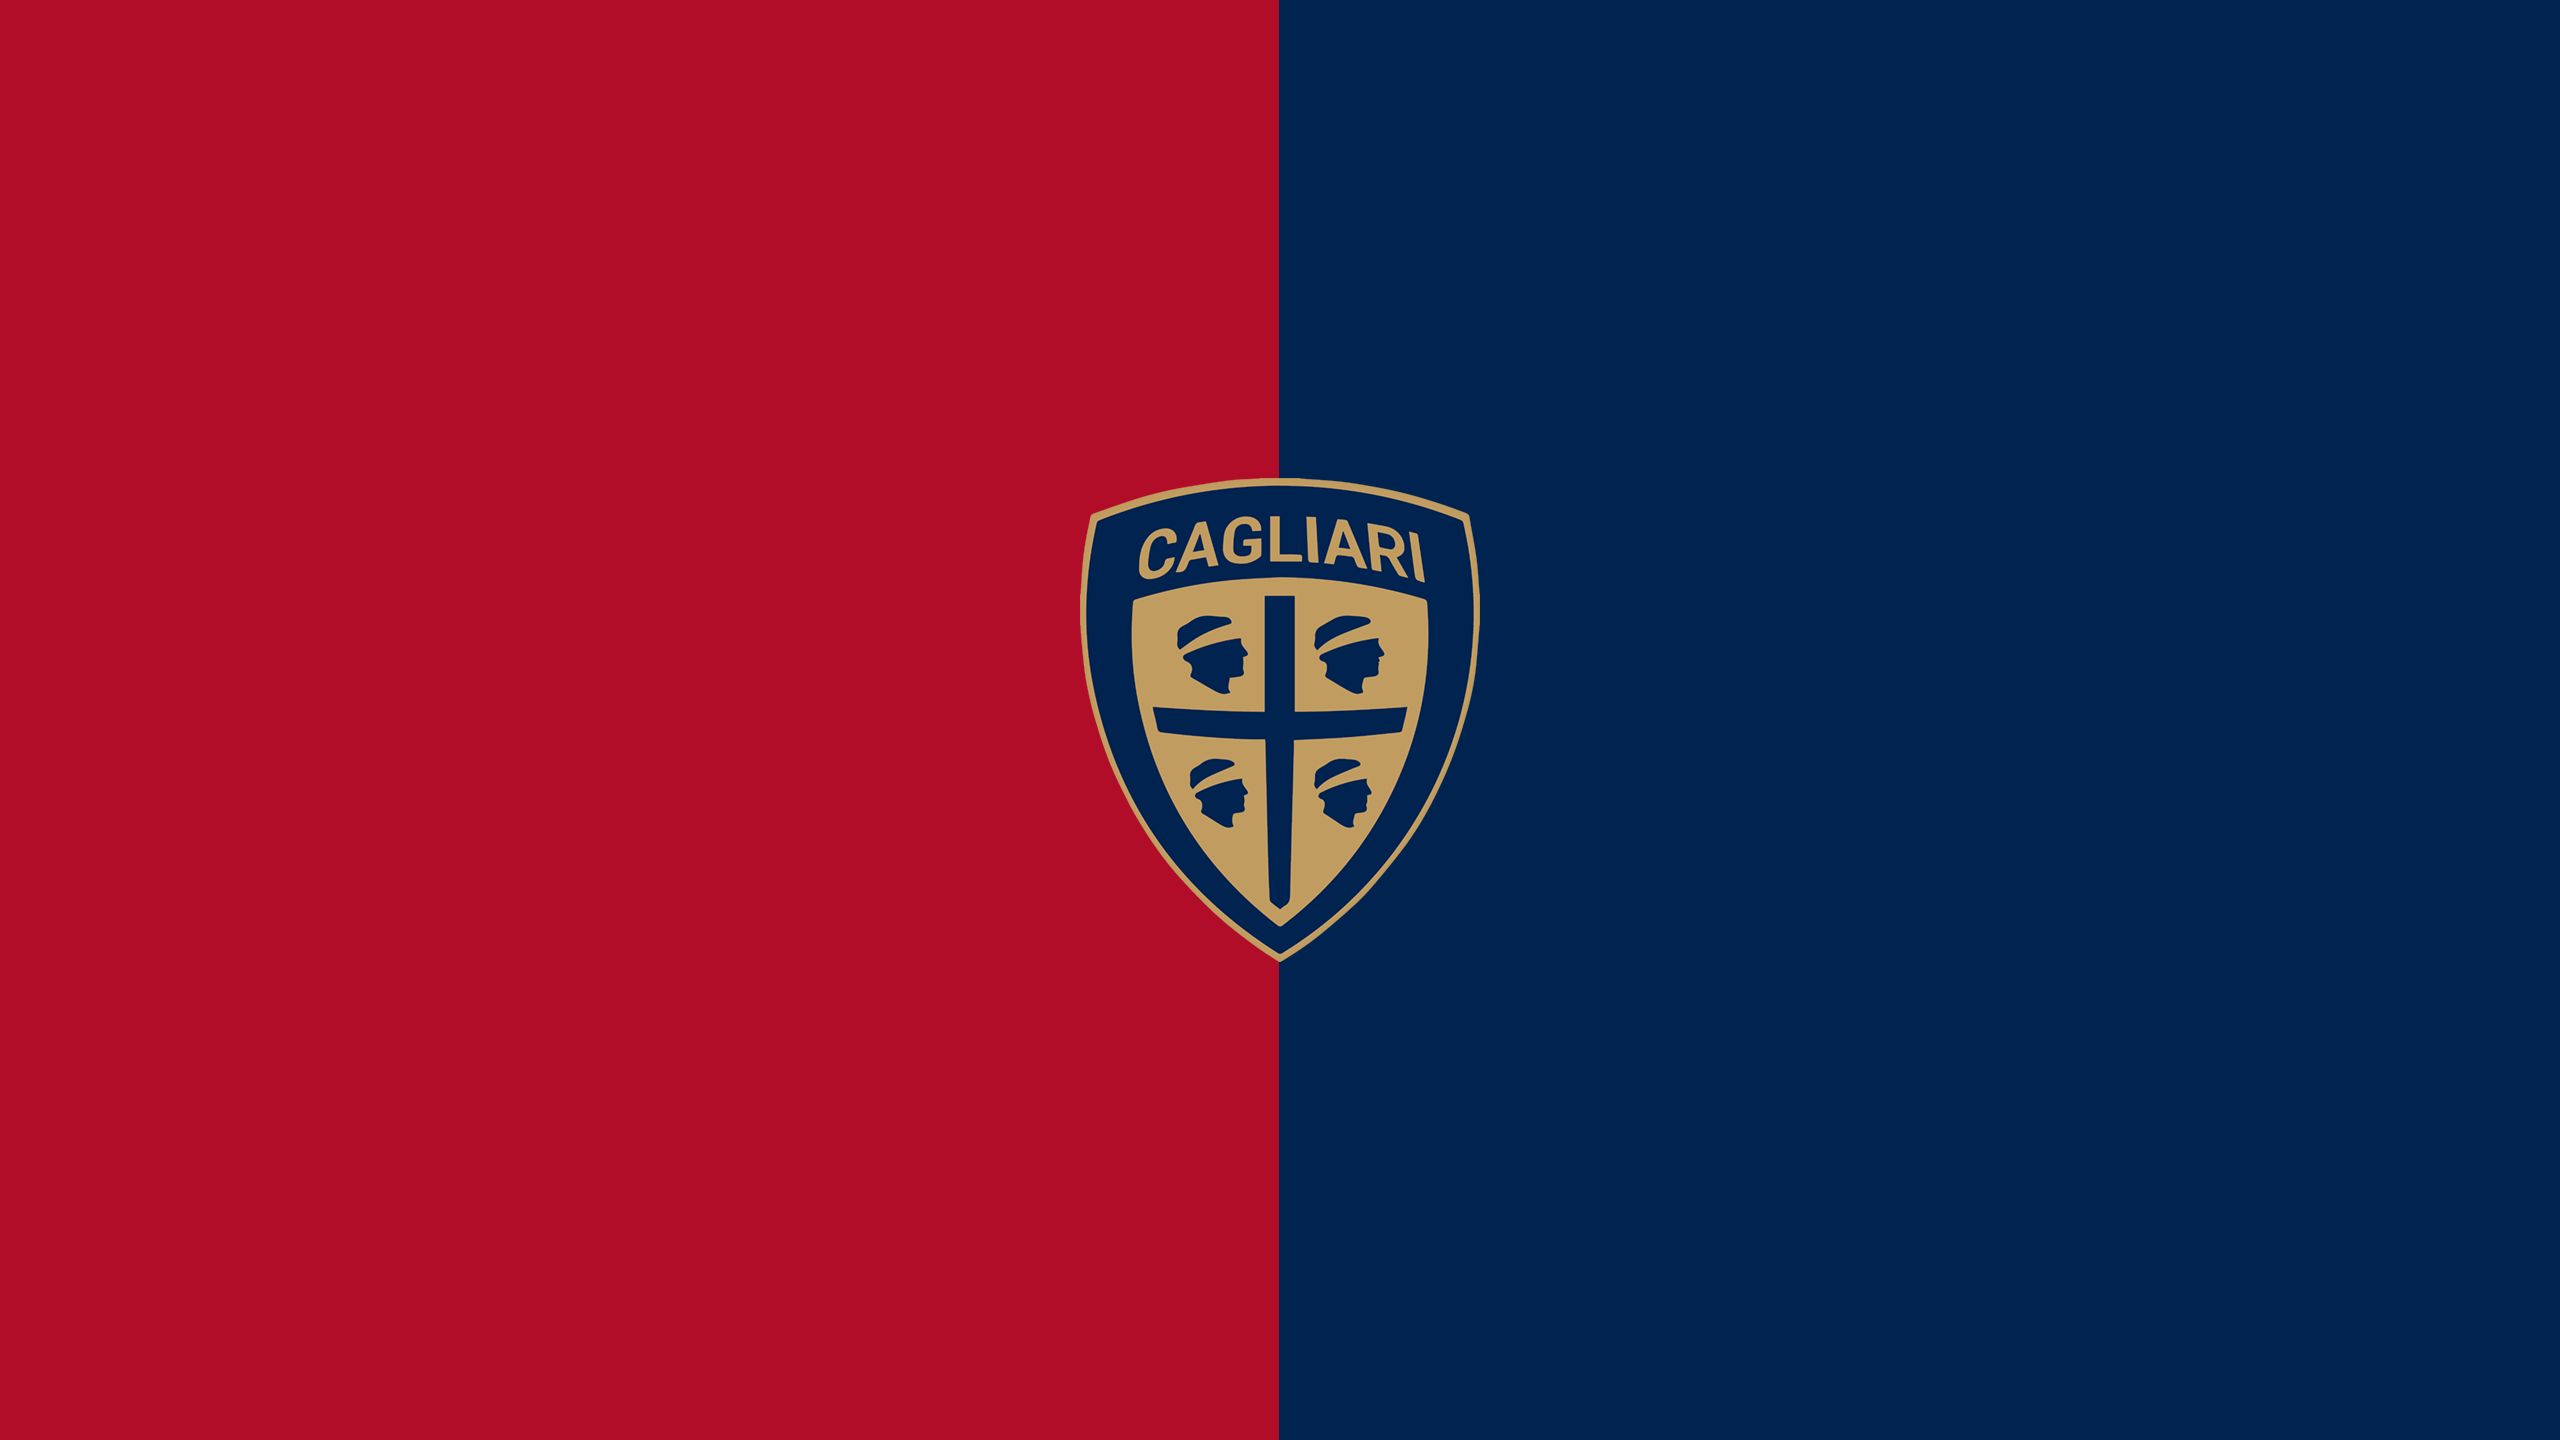 Download mobile wallpaper Sports, Logo, Emblem, Soccer, Cagliari Calcio for free.